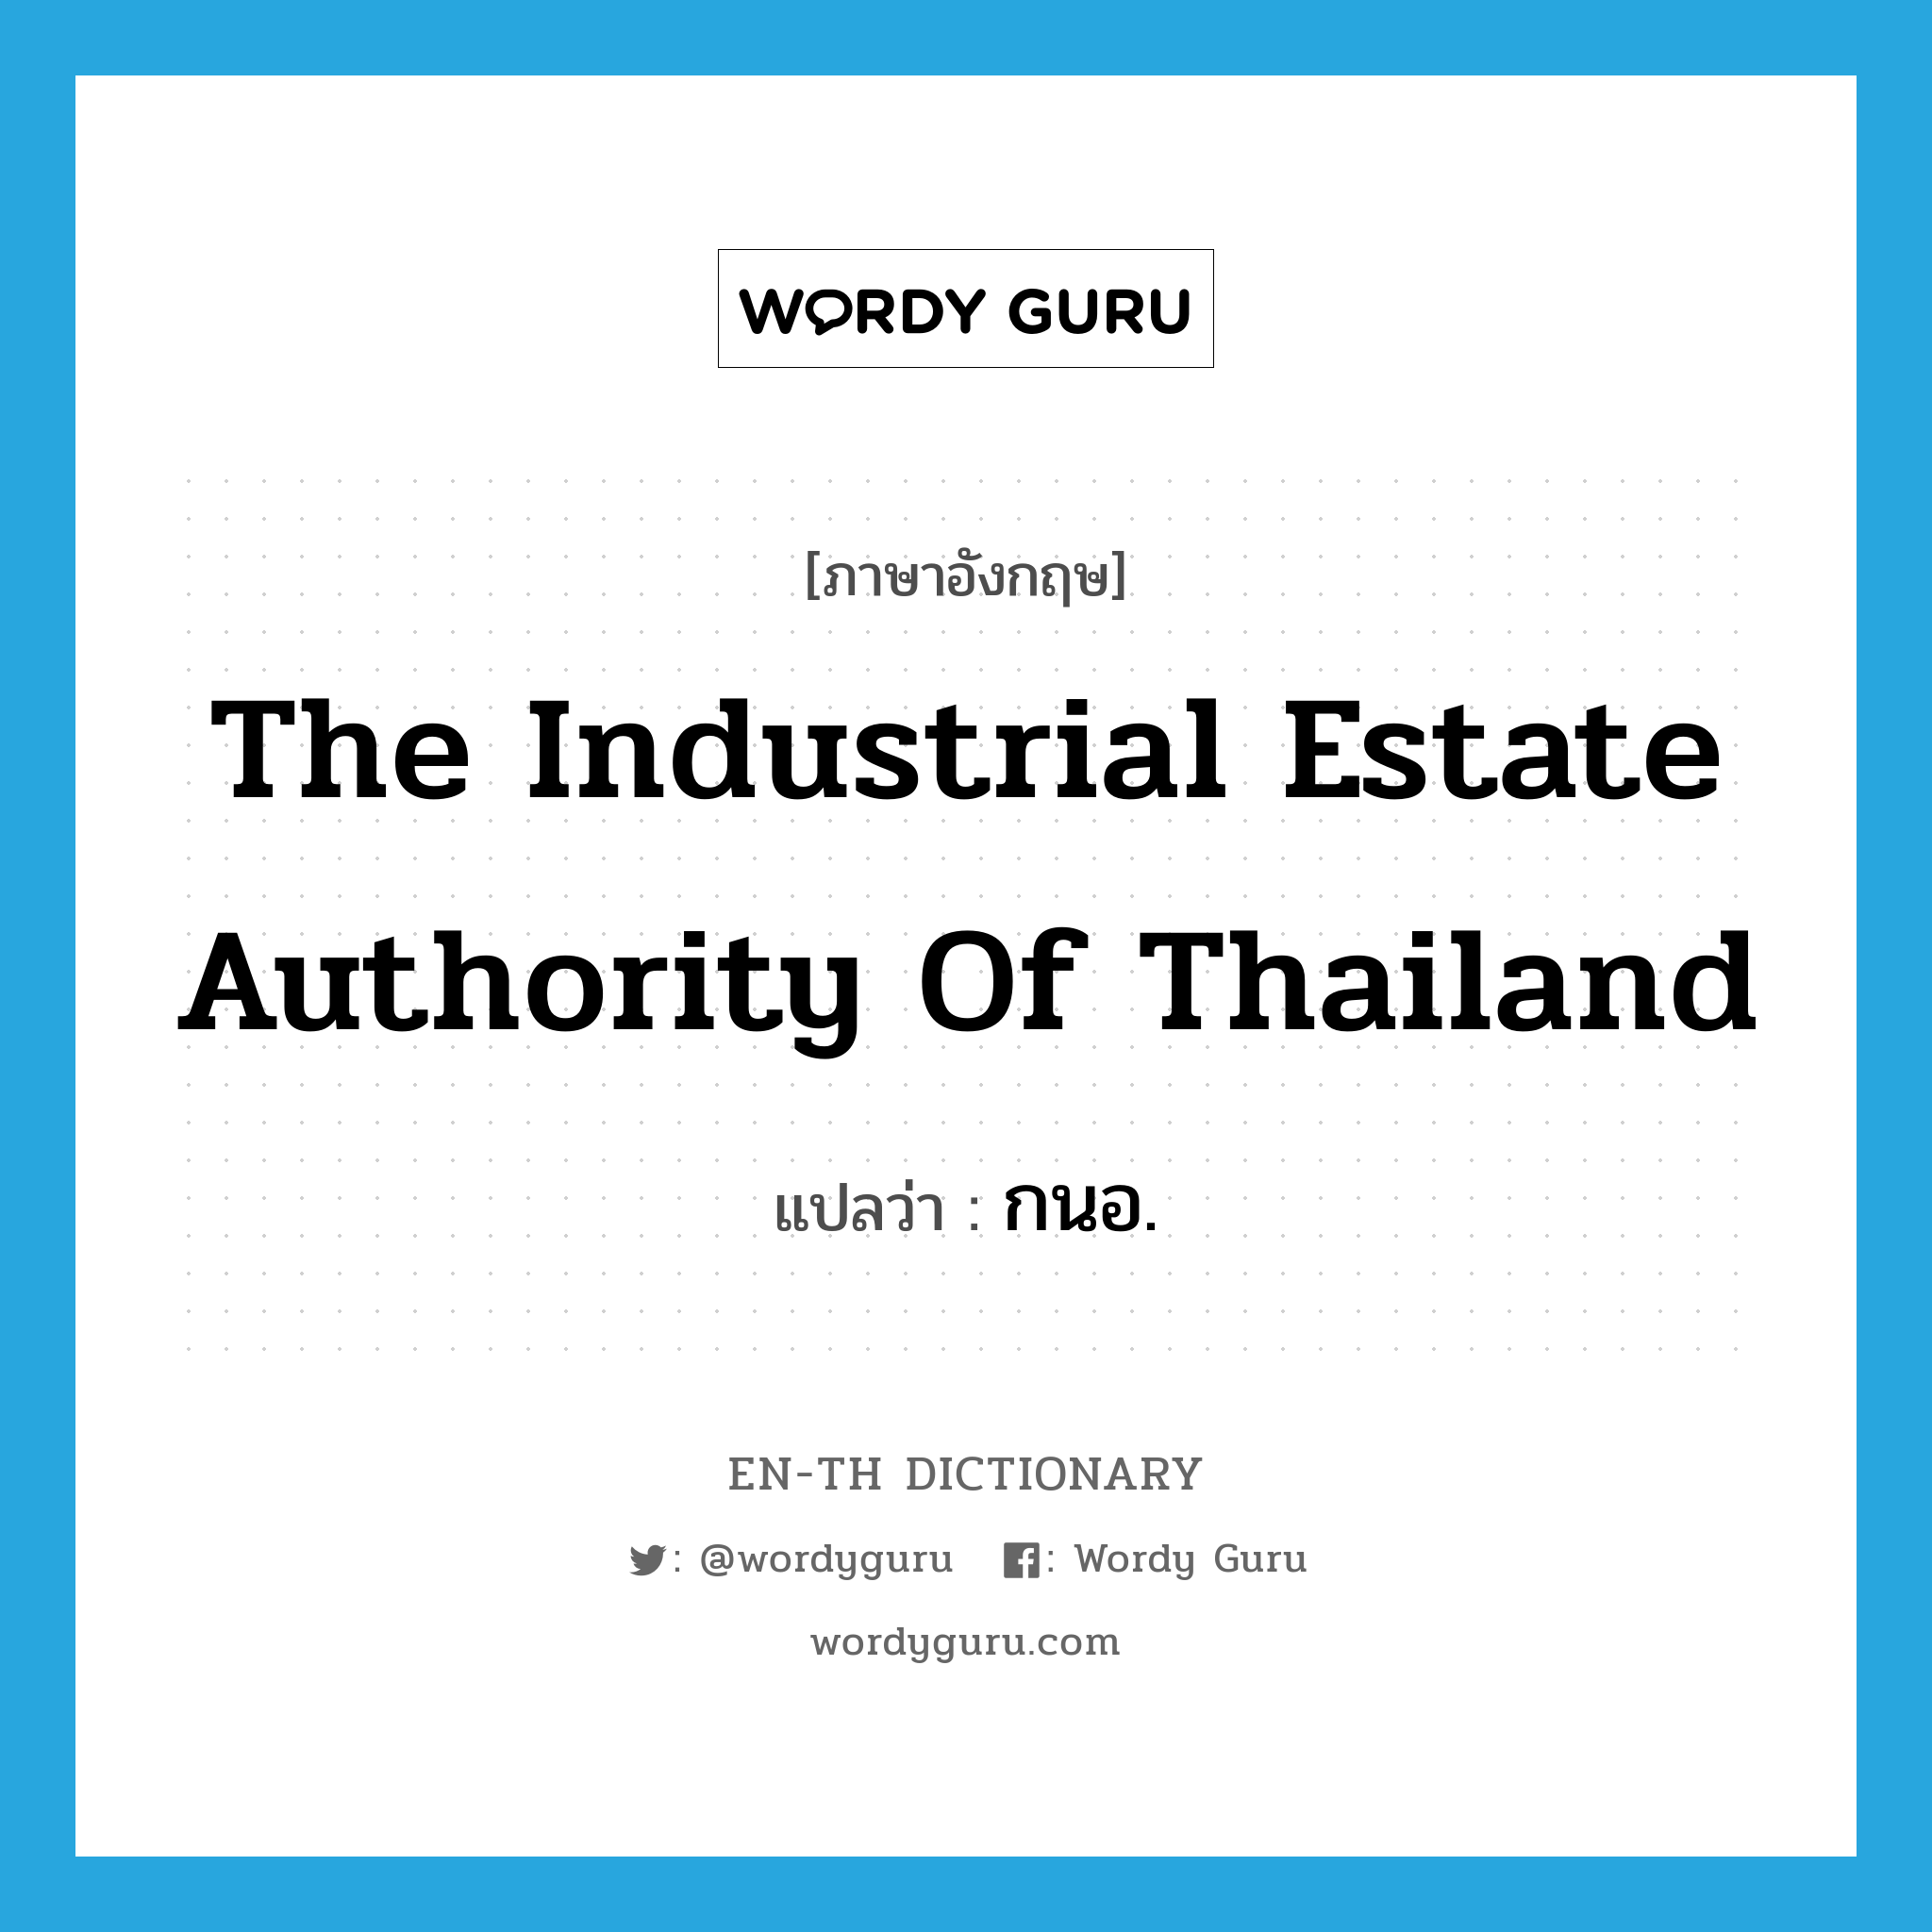 กนอ. ภาษาอังกฤษ?, คำศัพท์ภาษาอังกฤษ กนอ. แปลว่า The Industrial Estate Authority of Thailand ประเภท N หมวด N